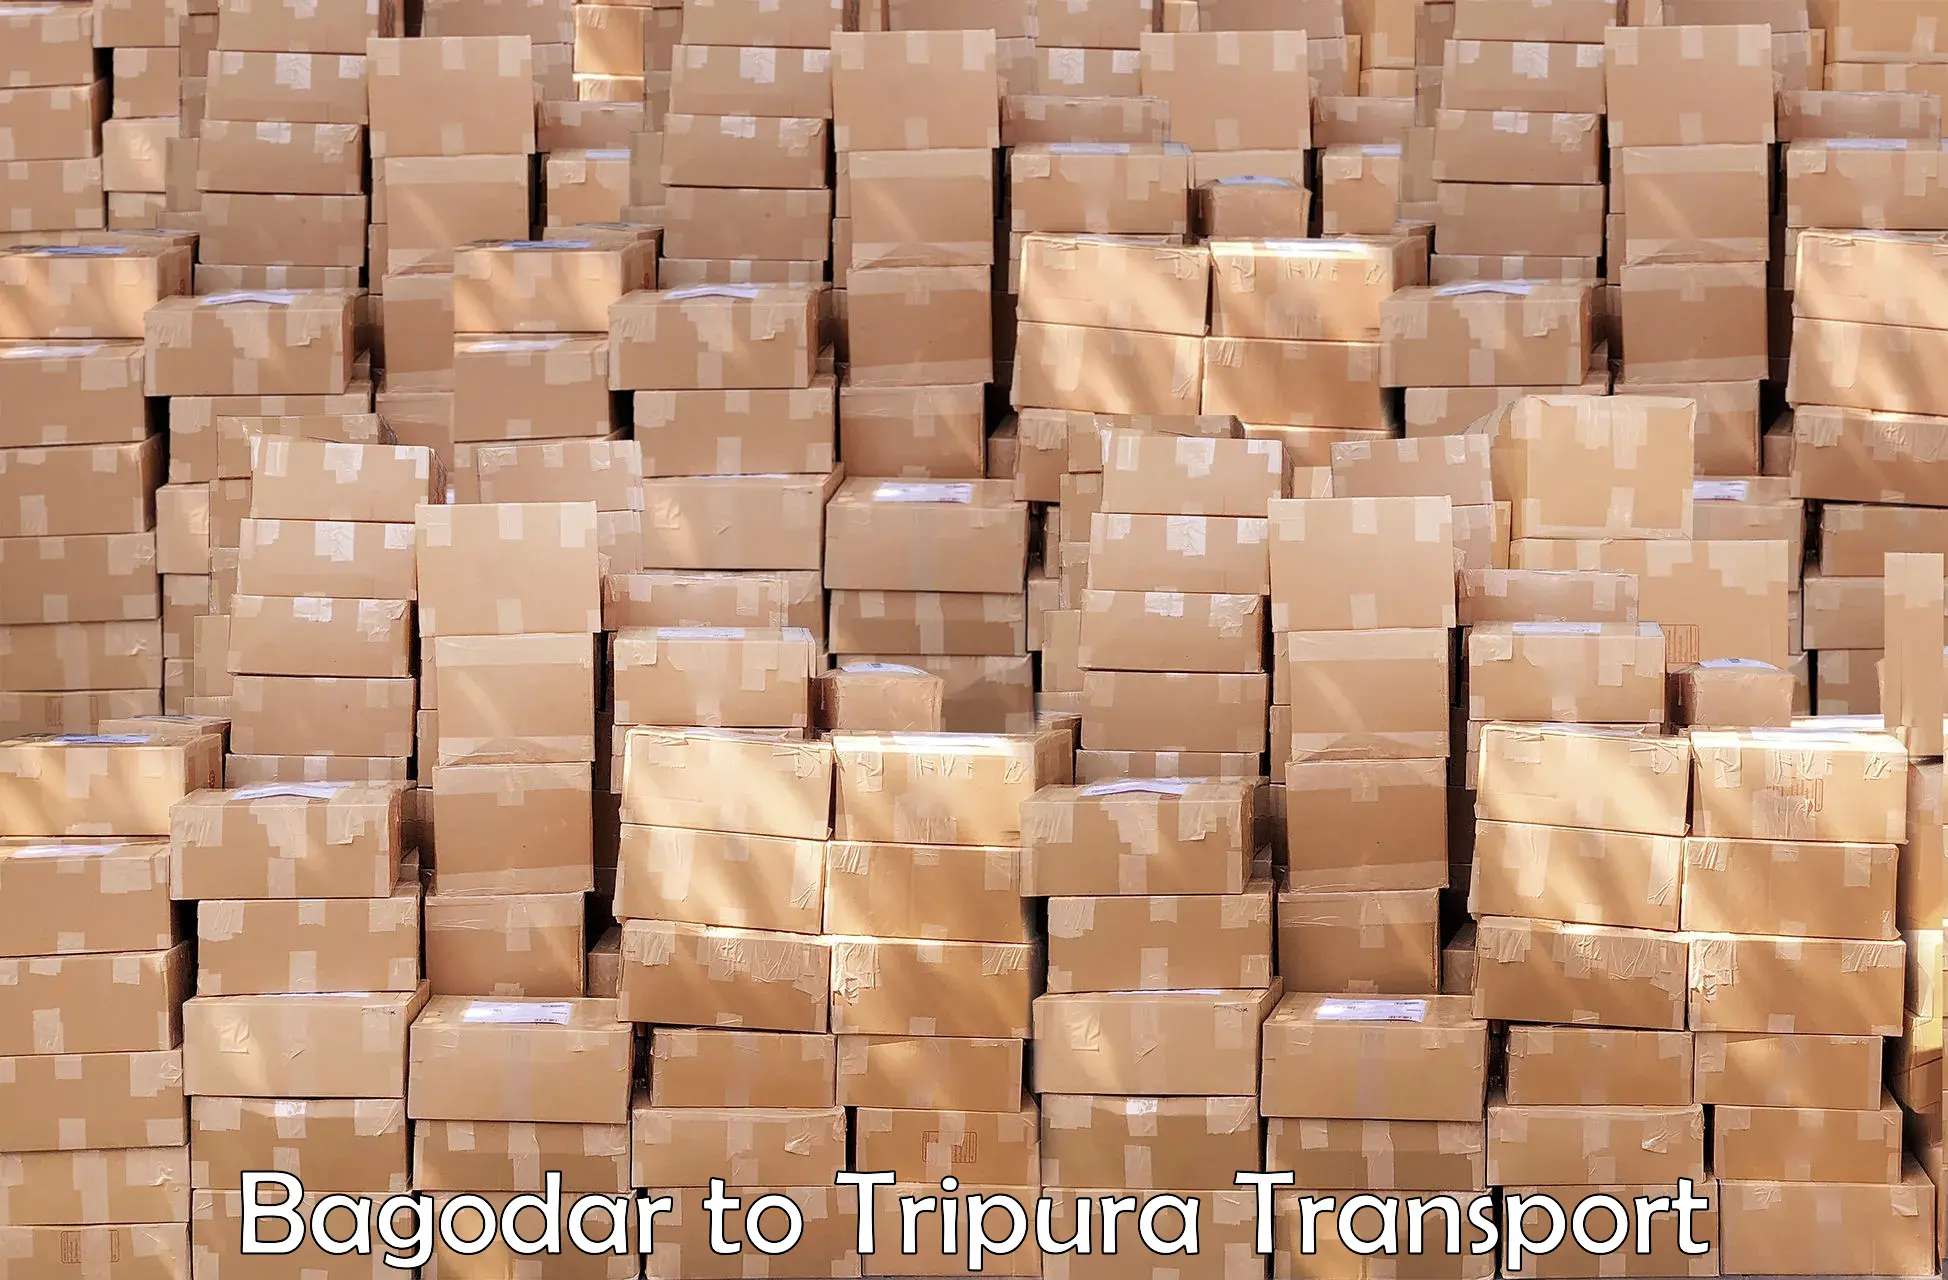 Intercity transport in Bagodar to Tripura